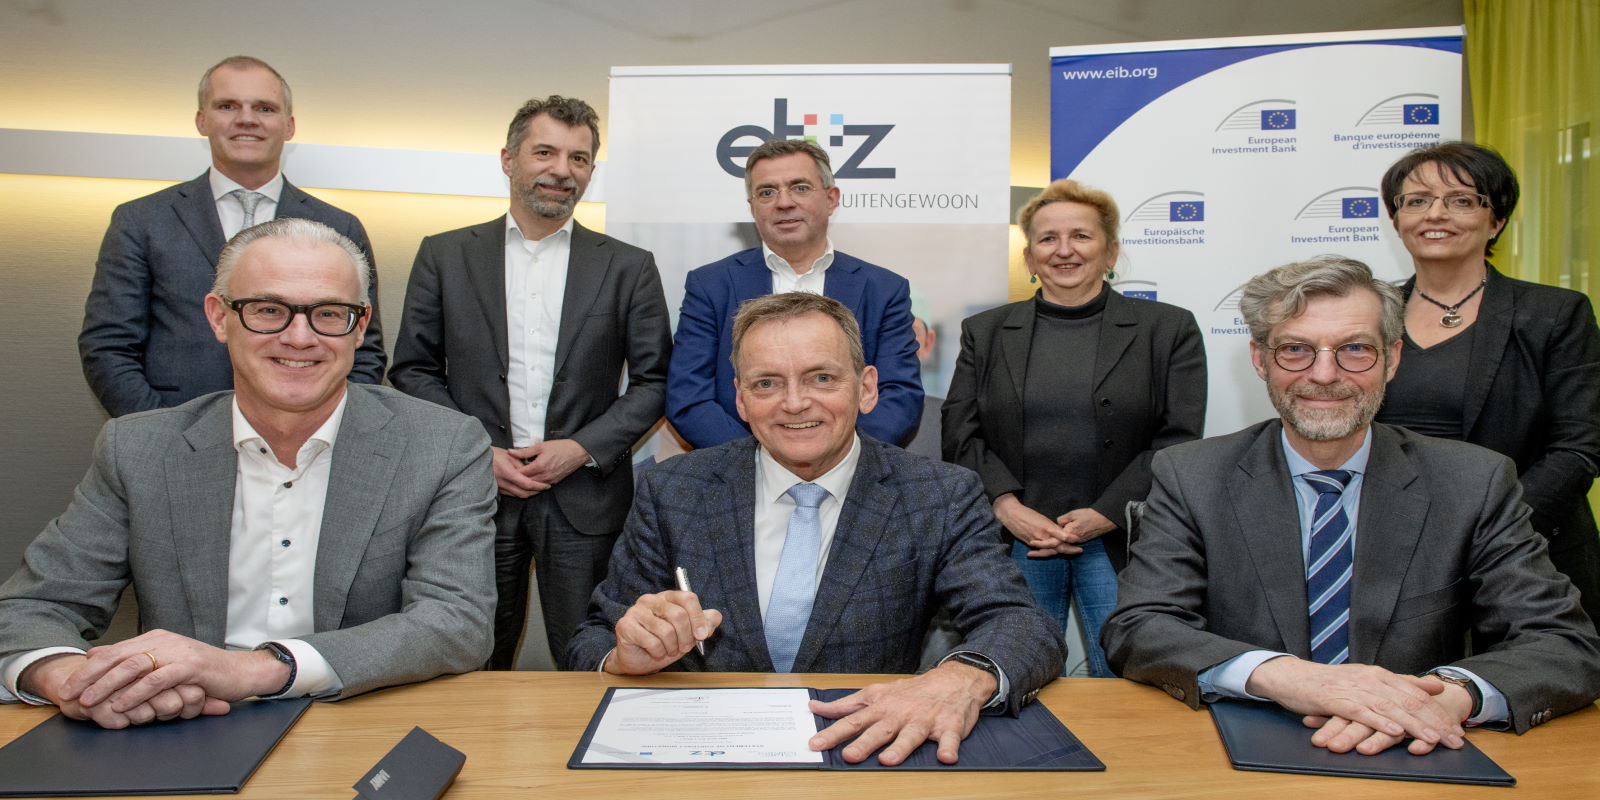 De kredietovereenkomst wordt ondertekend door (v.l.n.r.) Rob Schreppers (BNG Bank), Gerard van Berlo (ETZ) en Robert de Groot (EIB). FOTO: ETZ/Maria van der Heyden.